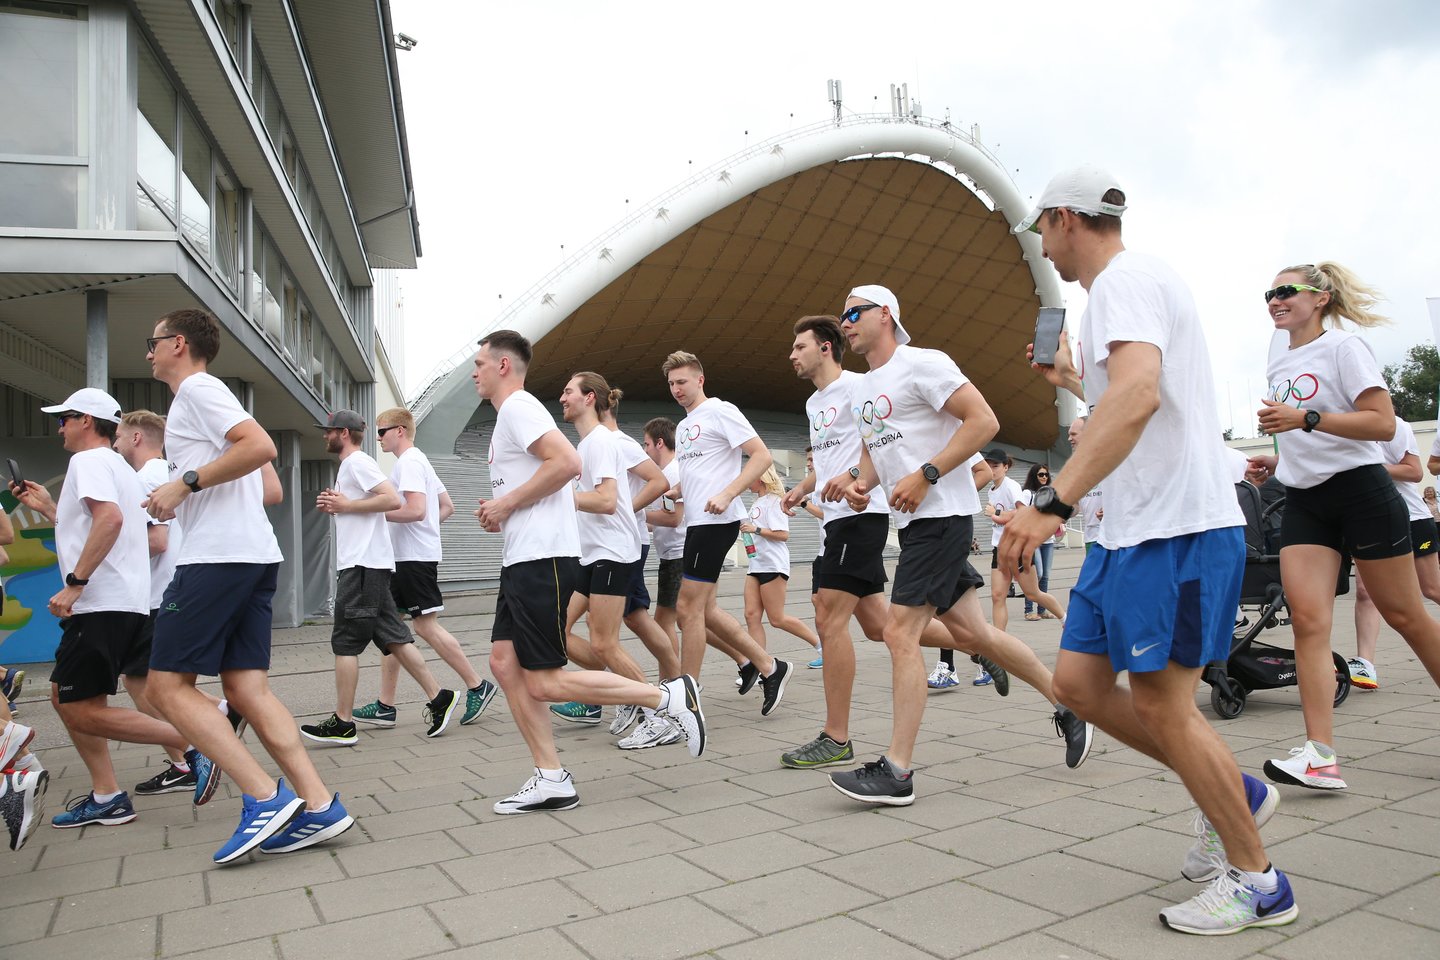  Olimpinės dienos renginys Vingio parke ir olimpinės mylios bėgimas <br> R.Danisevičiaus nuotr.